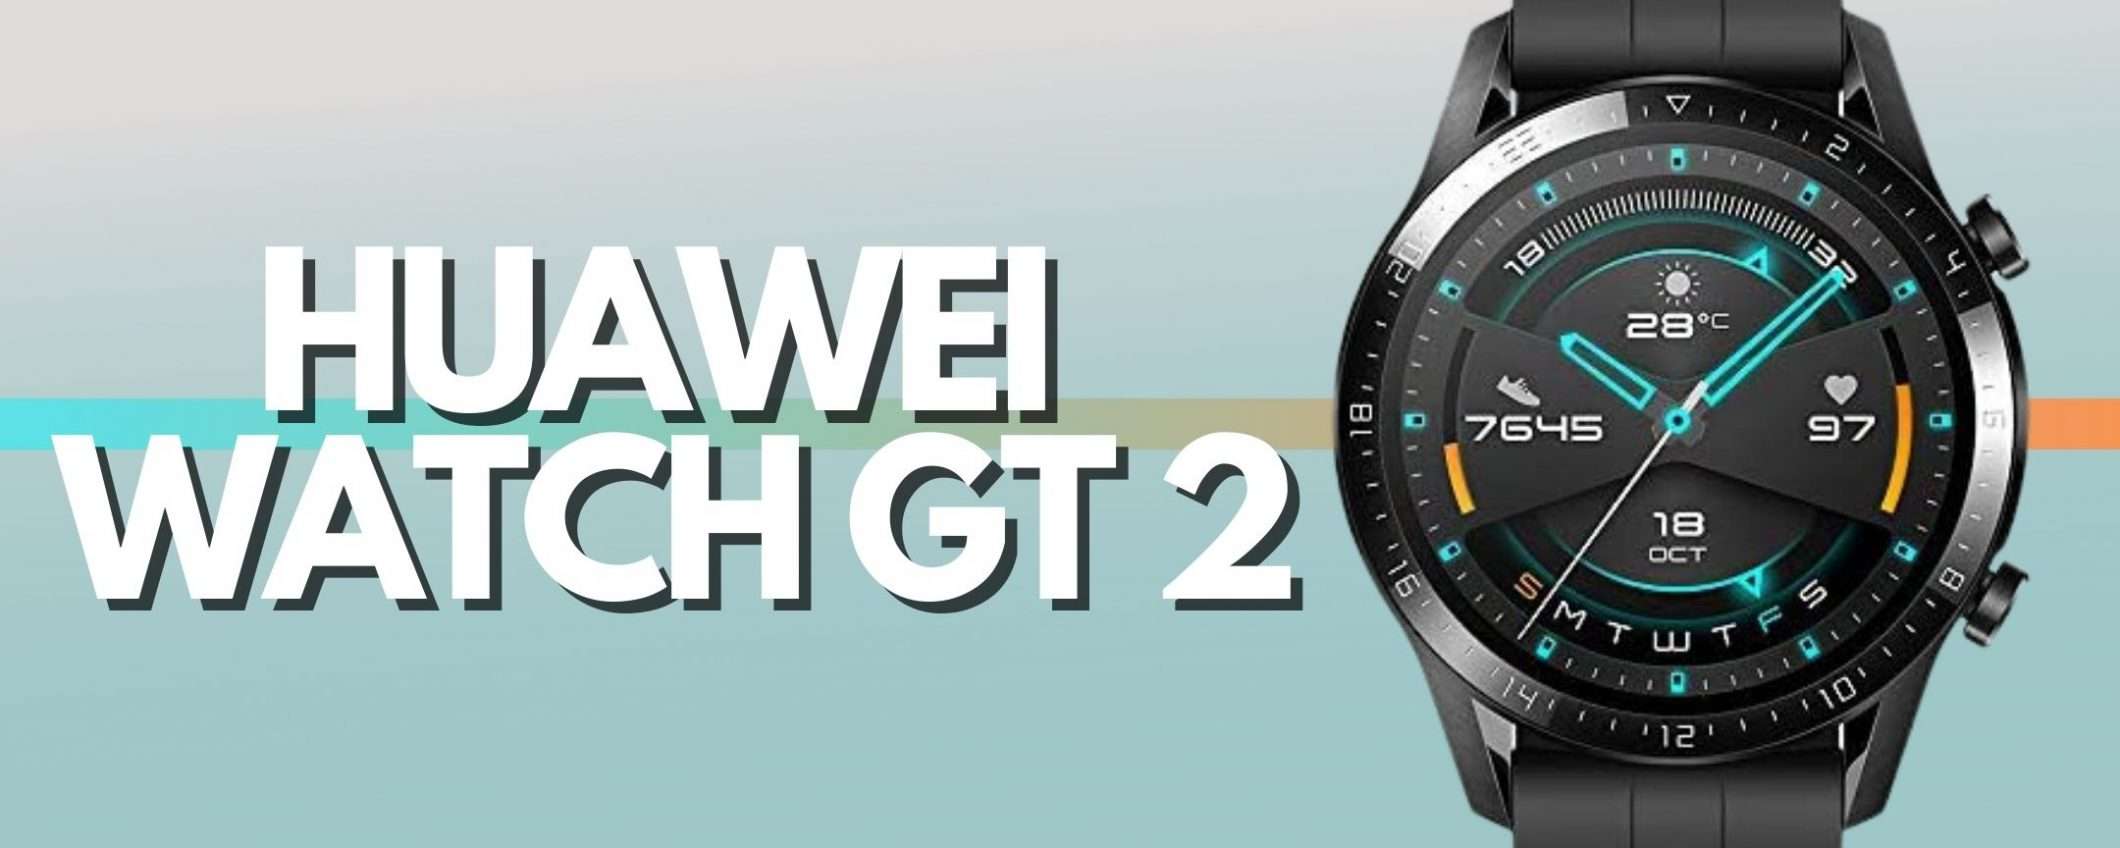 Huawei Watch GT 2 a metà prezzo (-48%)